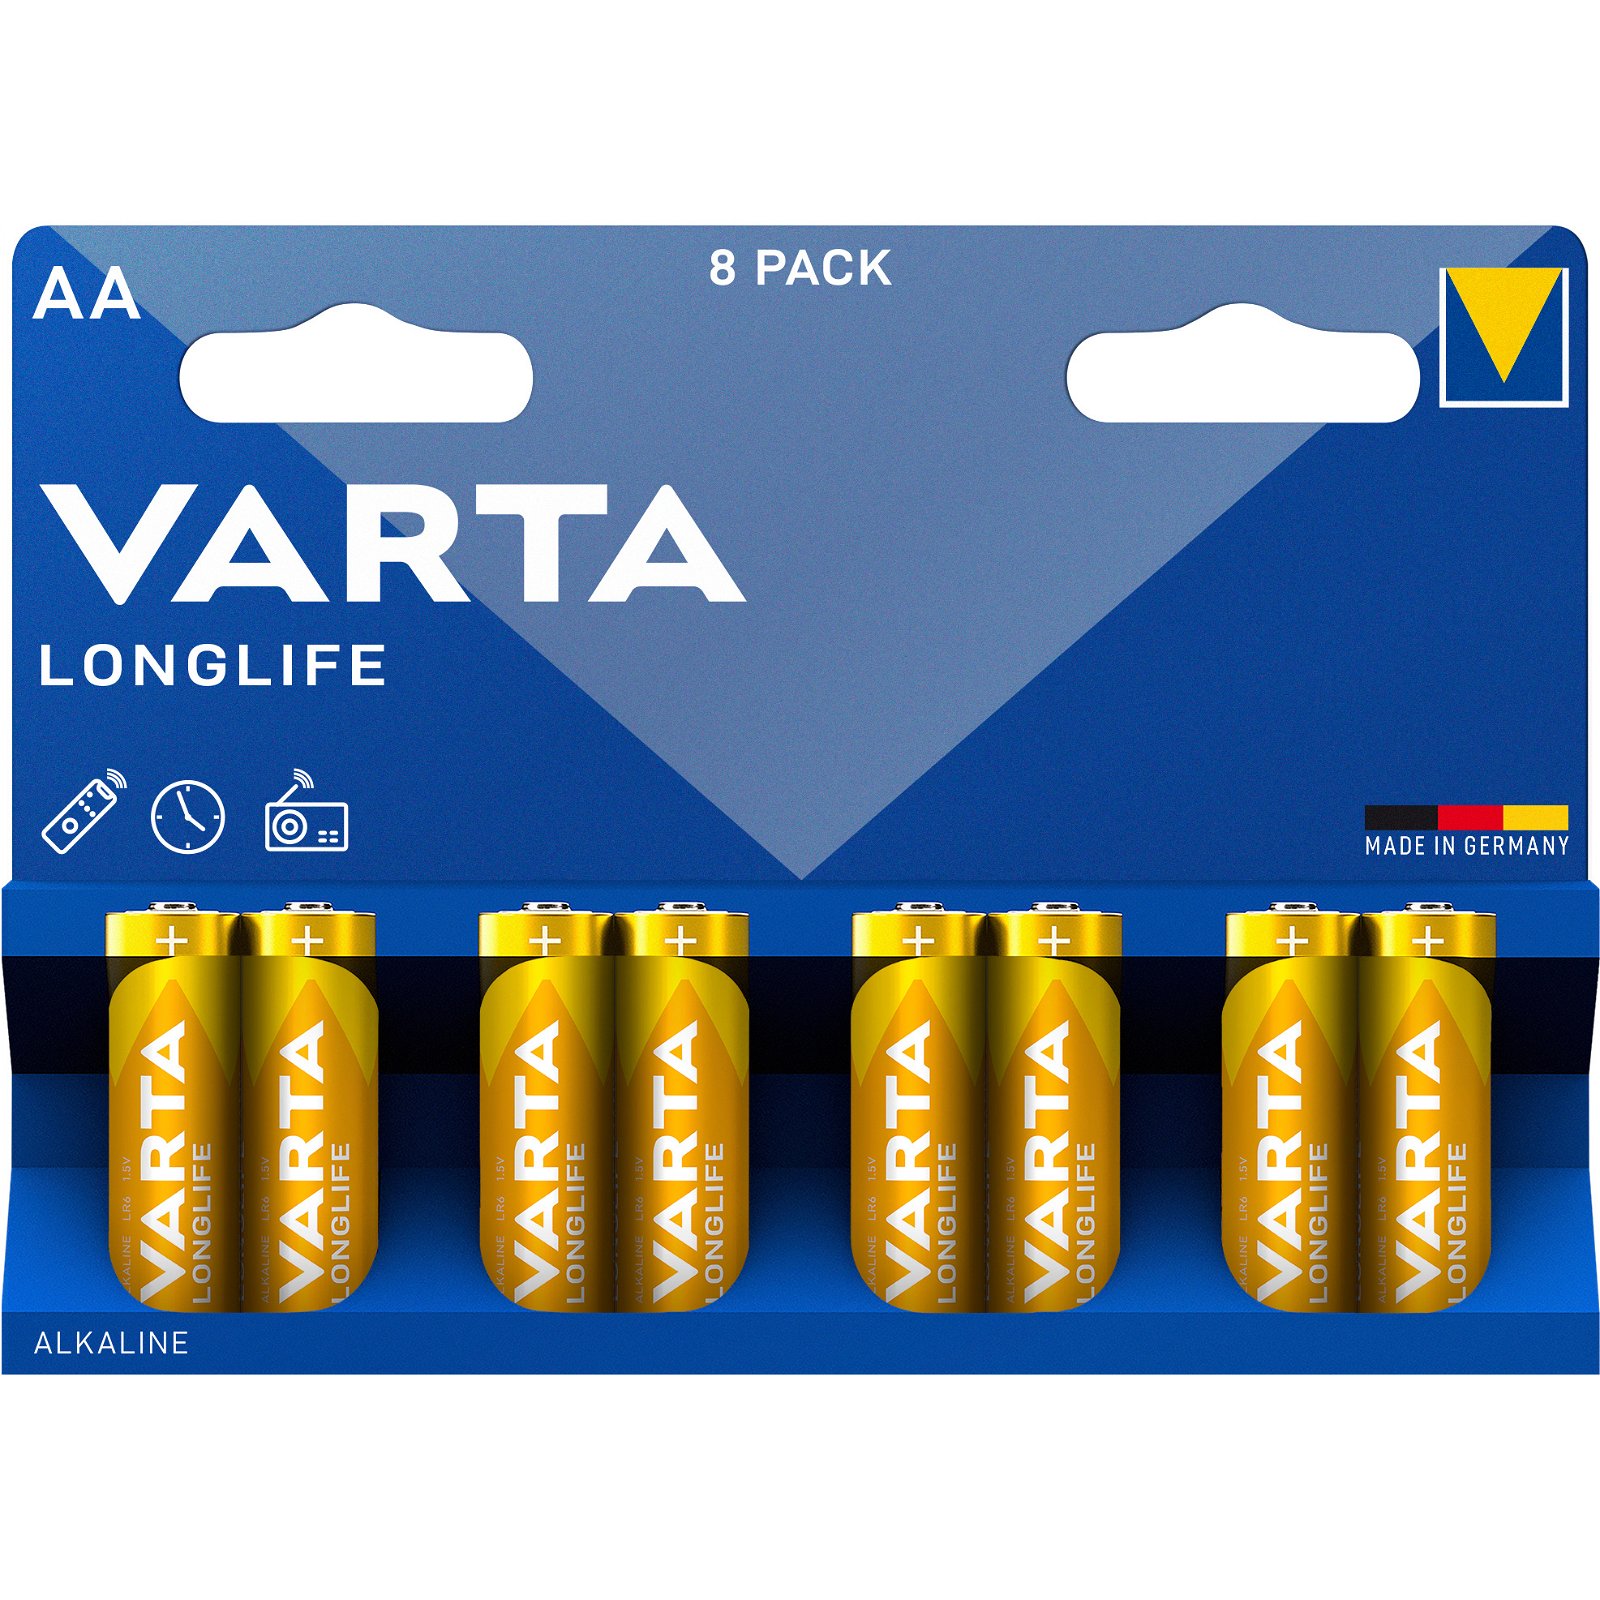 VARTA LongLife batteri AA/LR6 1.5 v 8 stk